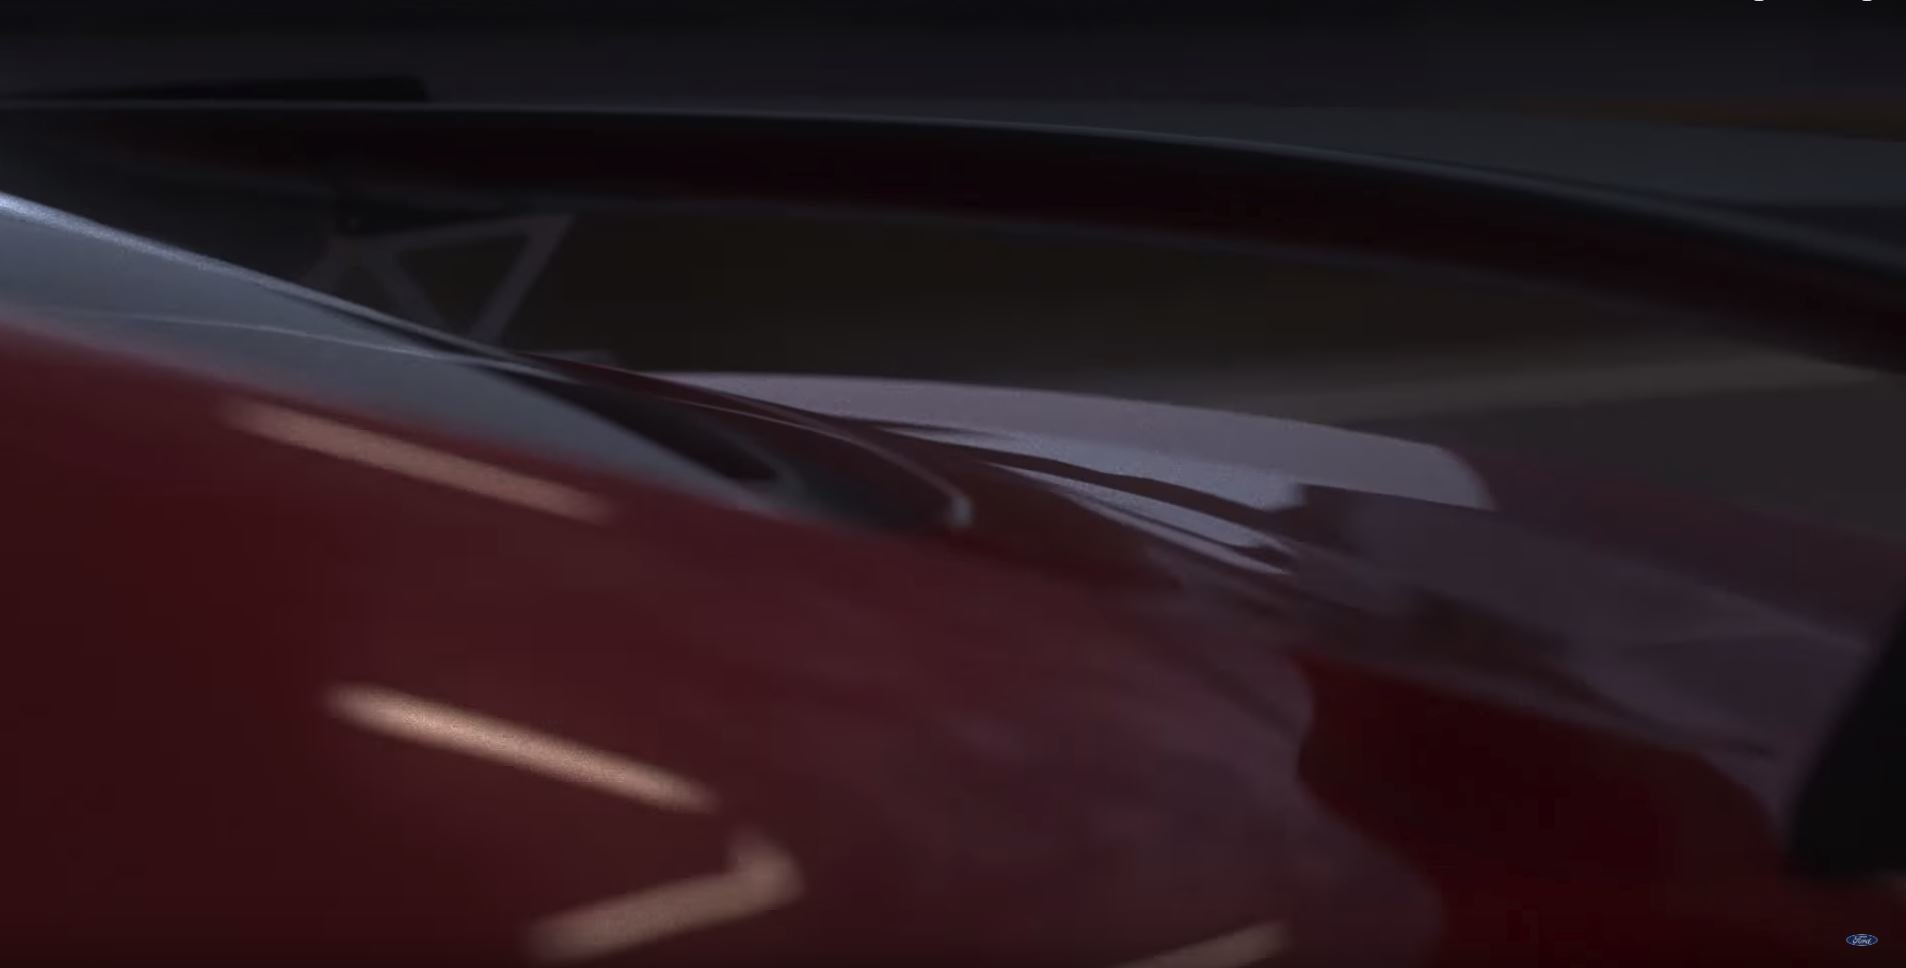 Snímky z videa, na kterém se nový Shelby GT500 objevil poprvé